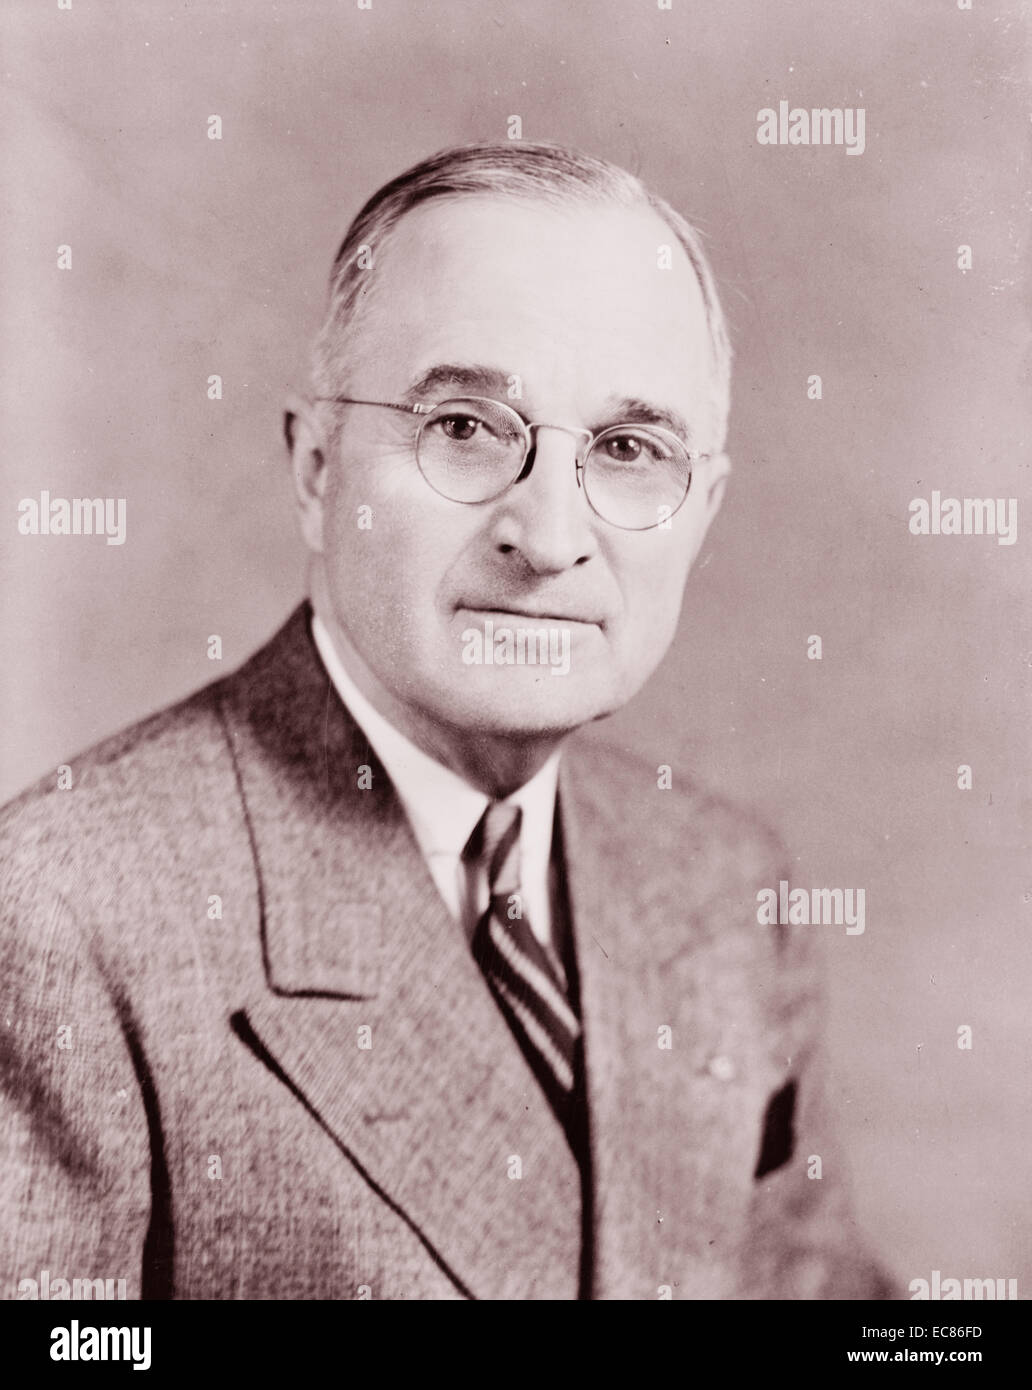 Photographie du Président Harry S. Truman (1884-1972) 33e président des États-Unis. Datée 1945 Banque D'Images